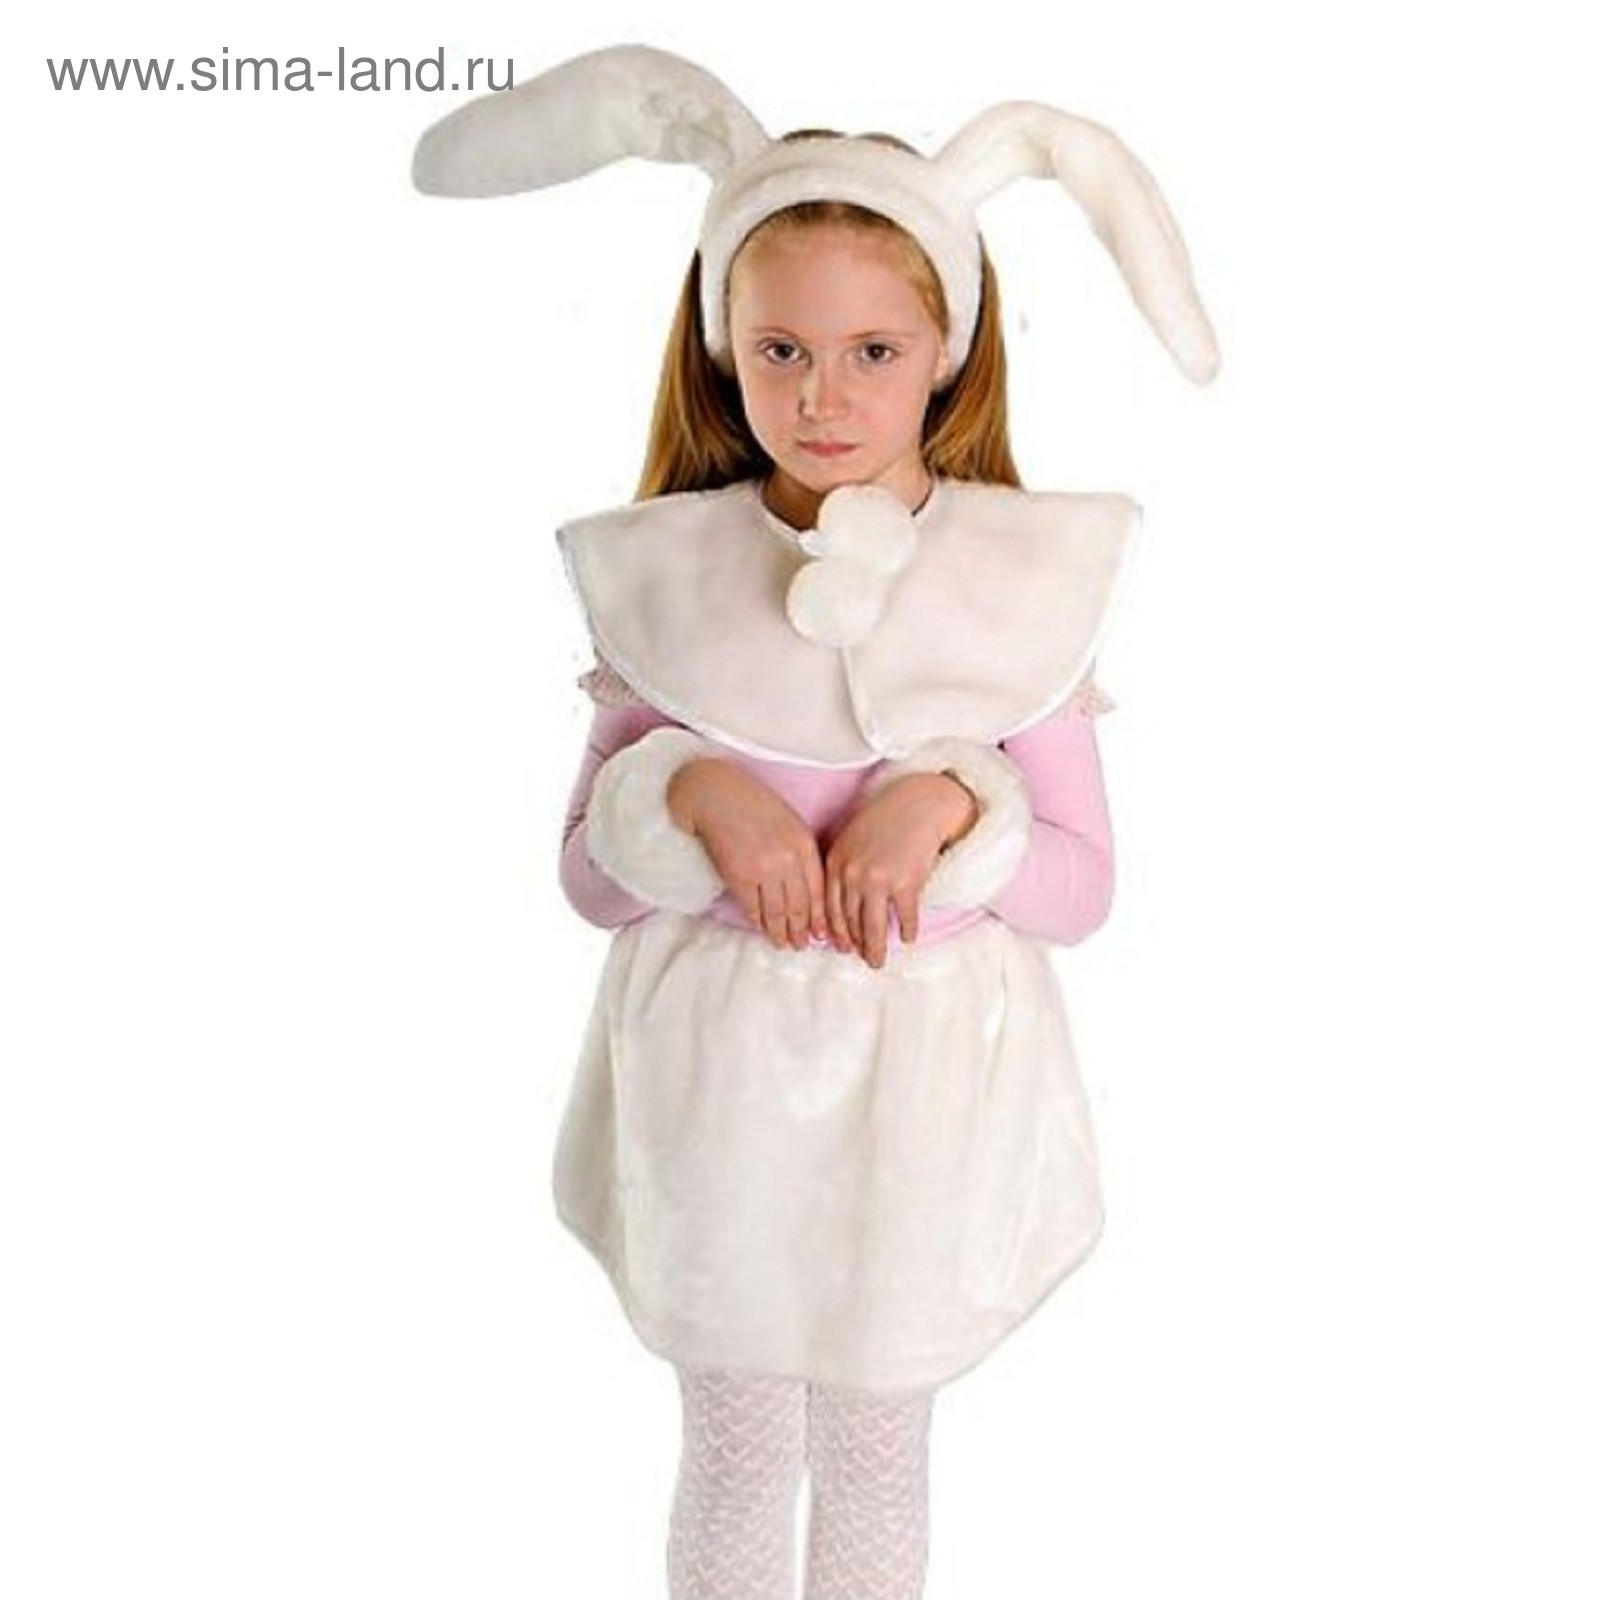 Девочка в костюме зайки. Костюм зайчика. Костюм зайца для девочки. Новогодний костюм зайки для девочки. Карнавальный костюм зайчика для девочки.